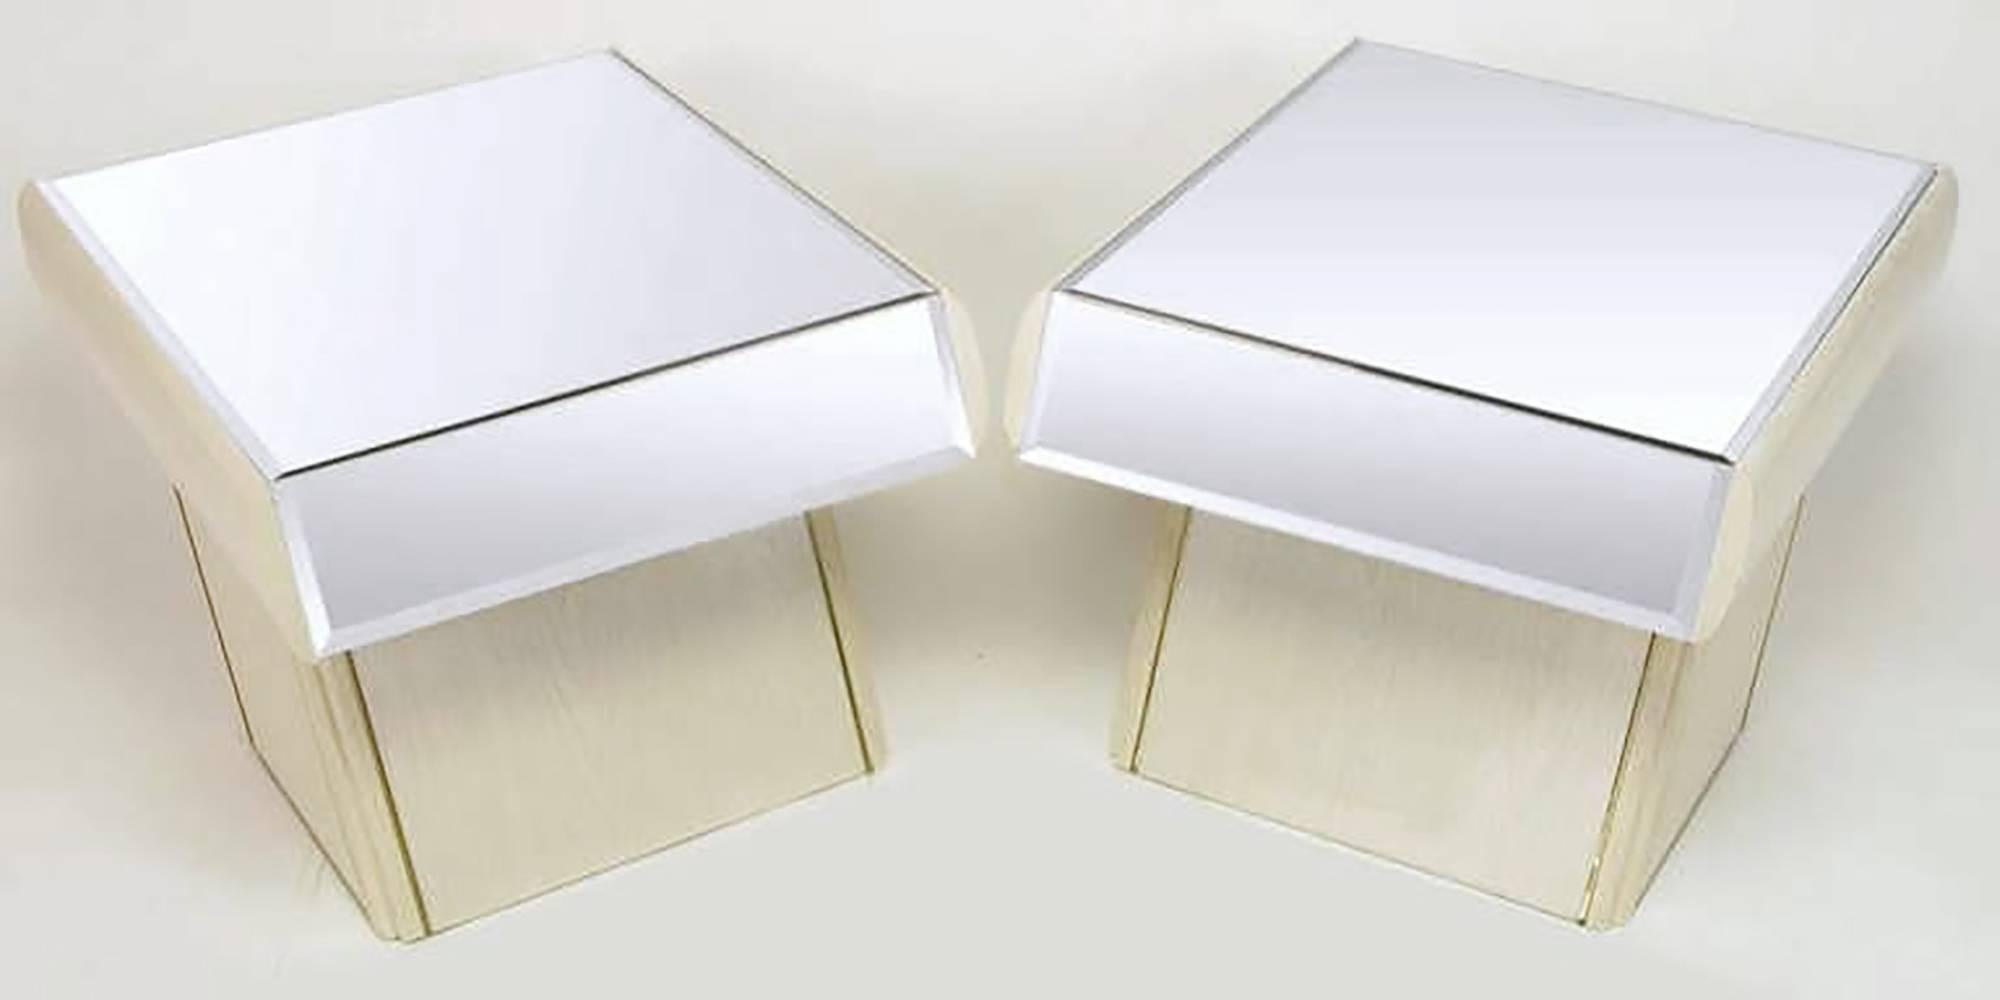 Tischpaar aus gefüllter und weiß lasierter Eiche mit goldeloxierten Aluminiumkanten. Abgeschrägte Spiegeloberflächen und einzelne Schubladenfronten. Die Untergestelle sind nach hinten geneigt und haben eine freitragende Schublade mit abgerundeten